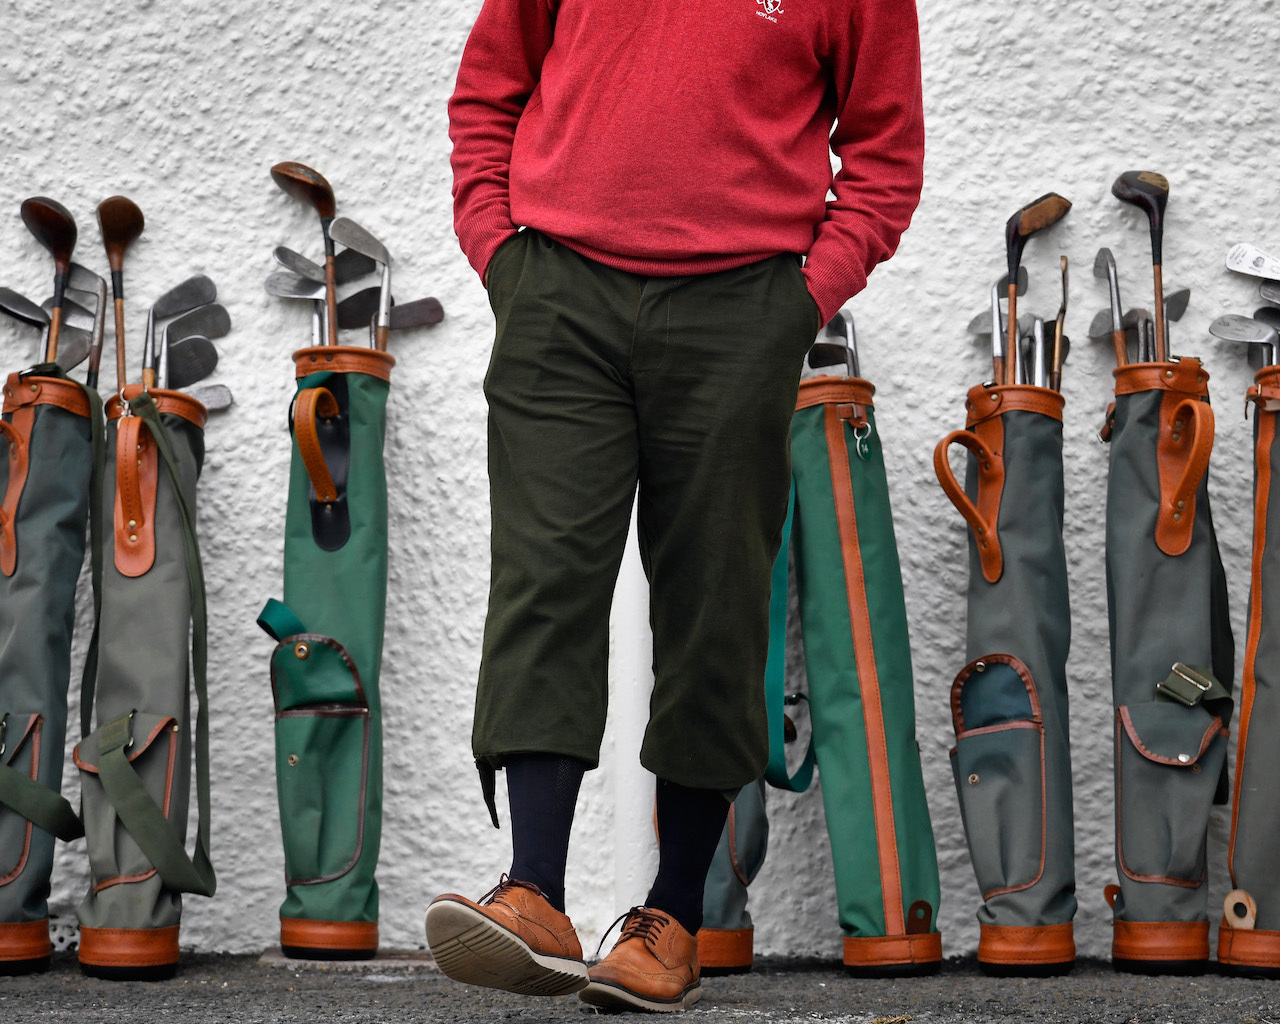 Used golf clubs behind golfer